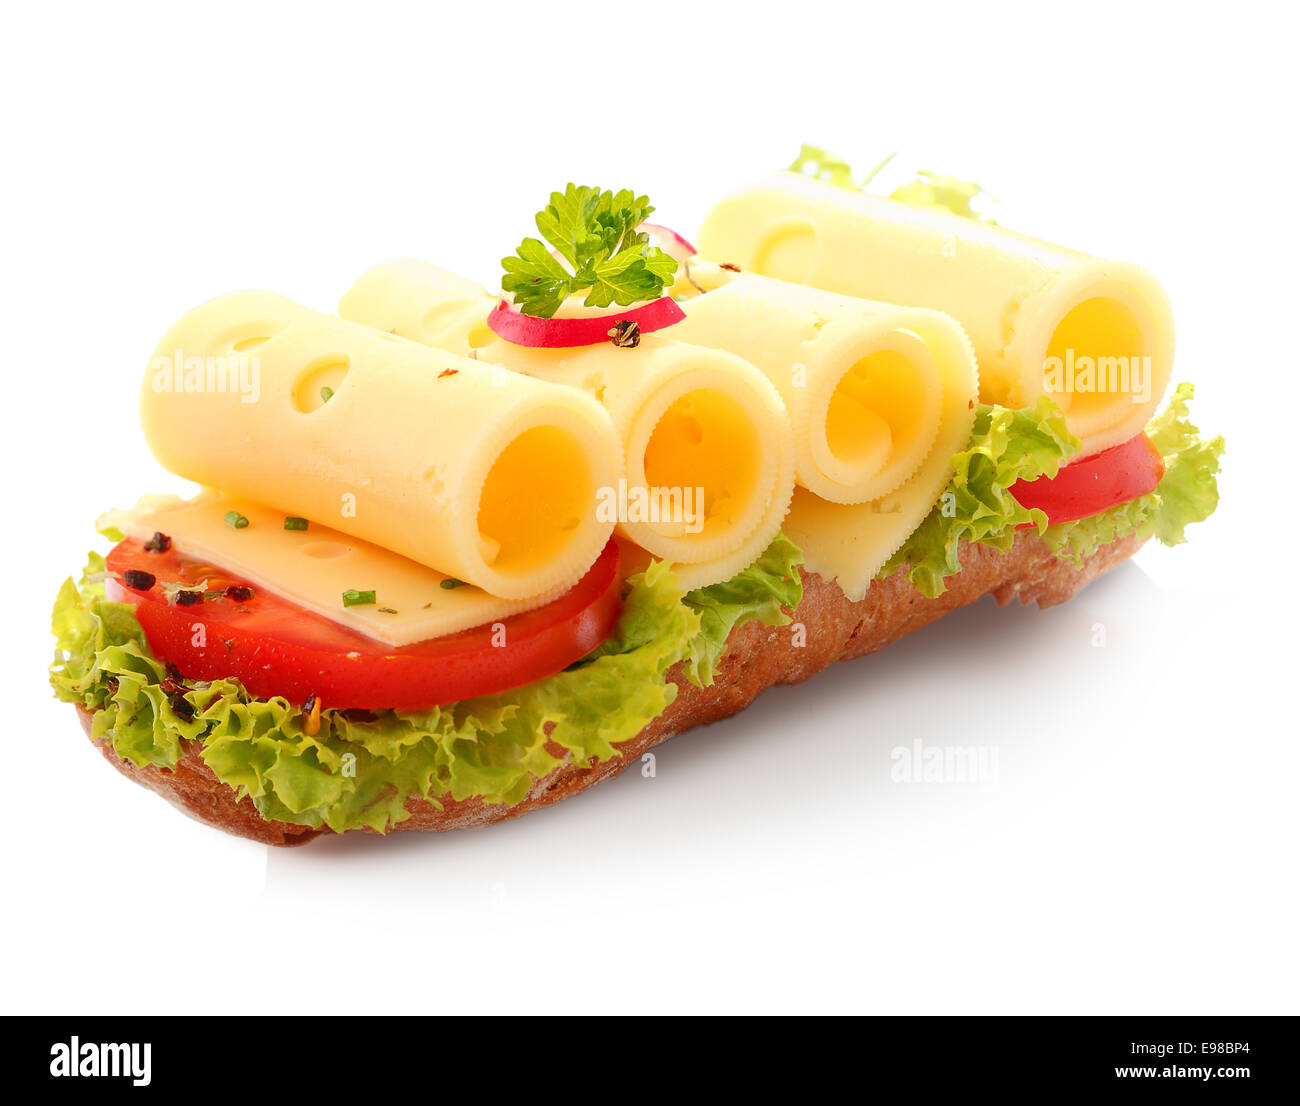 Dekorative offene Baguette-Sandwich mit vier Scheiben gerollte Käse auf frischem Salat und Tomatenscheiben rot auf weißem Hintergrund Stockfoto